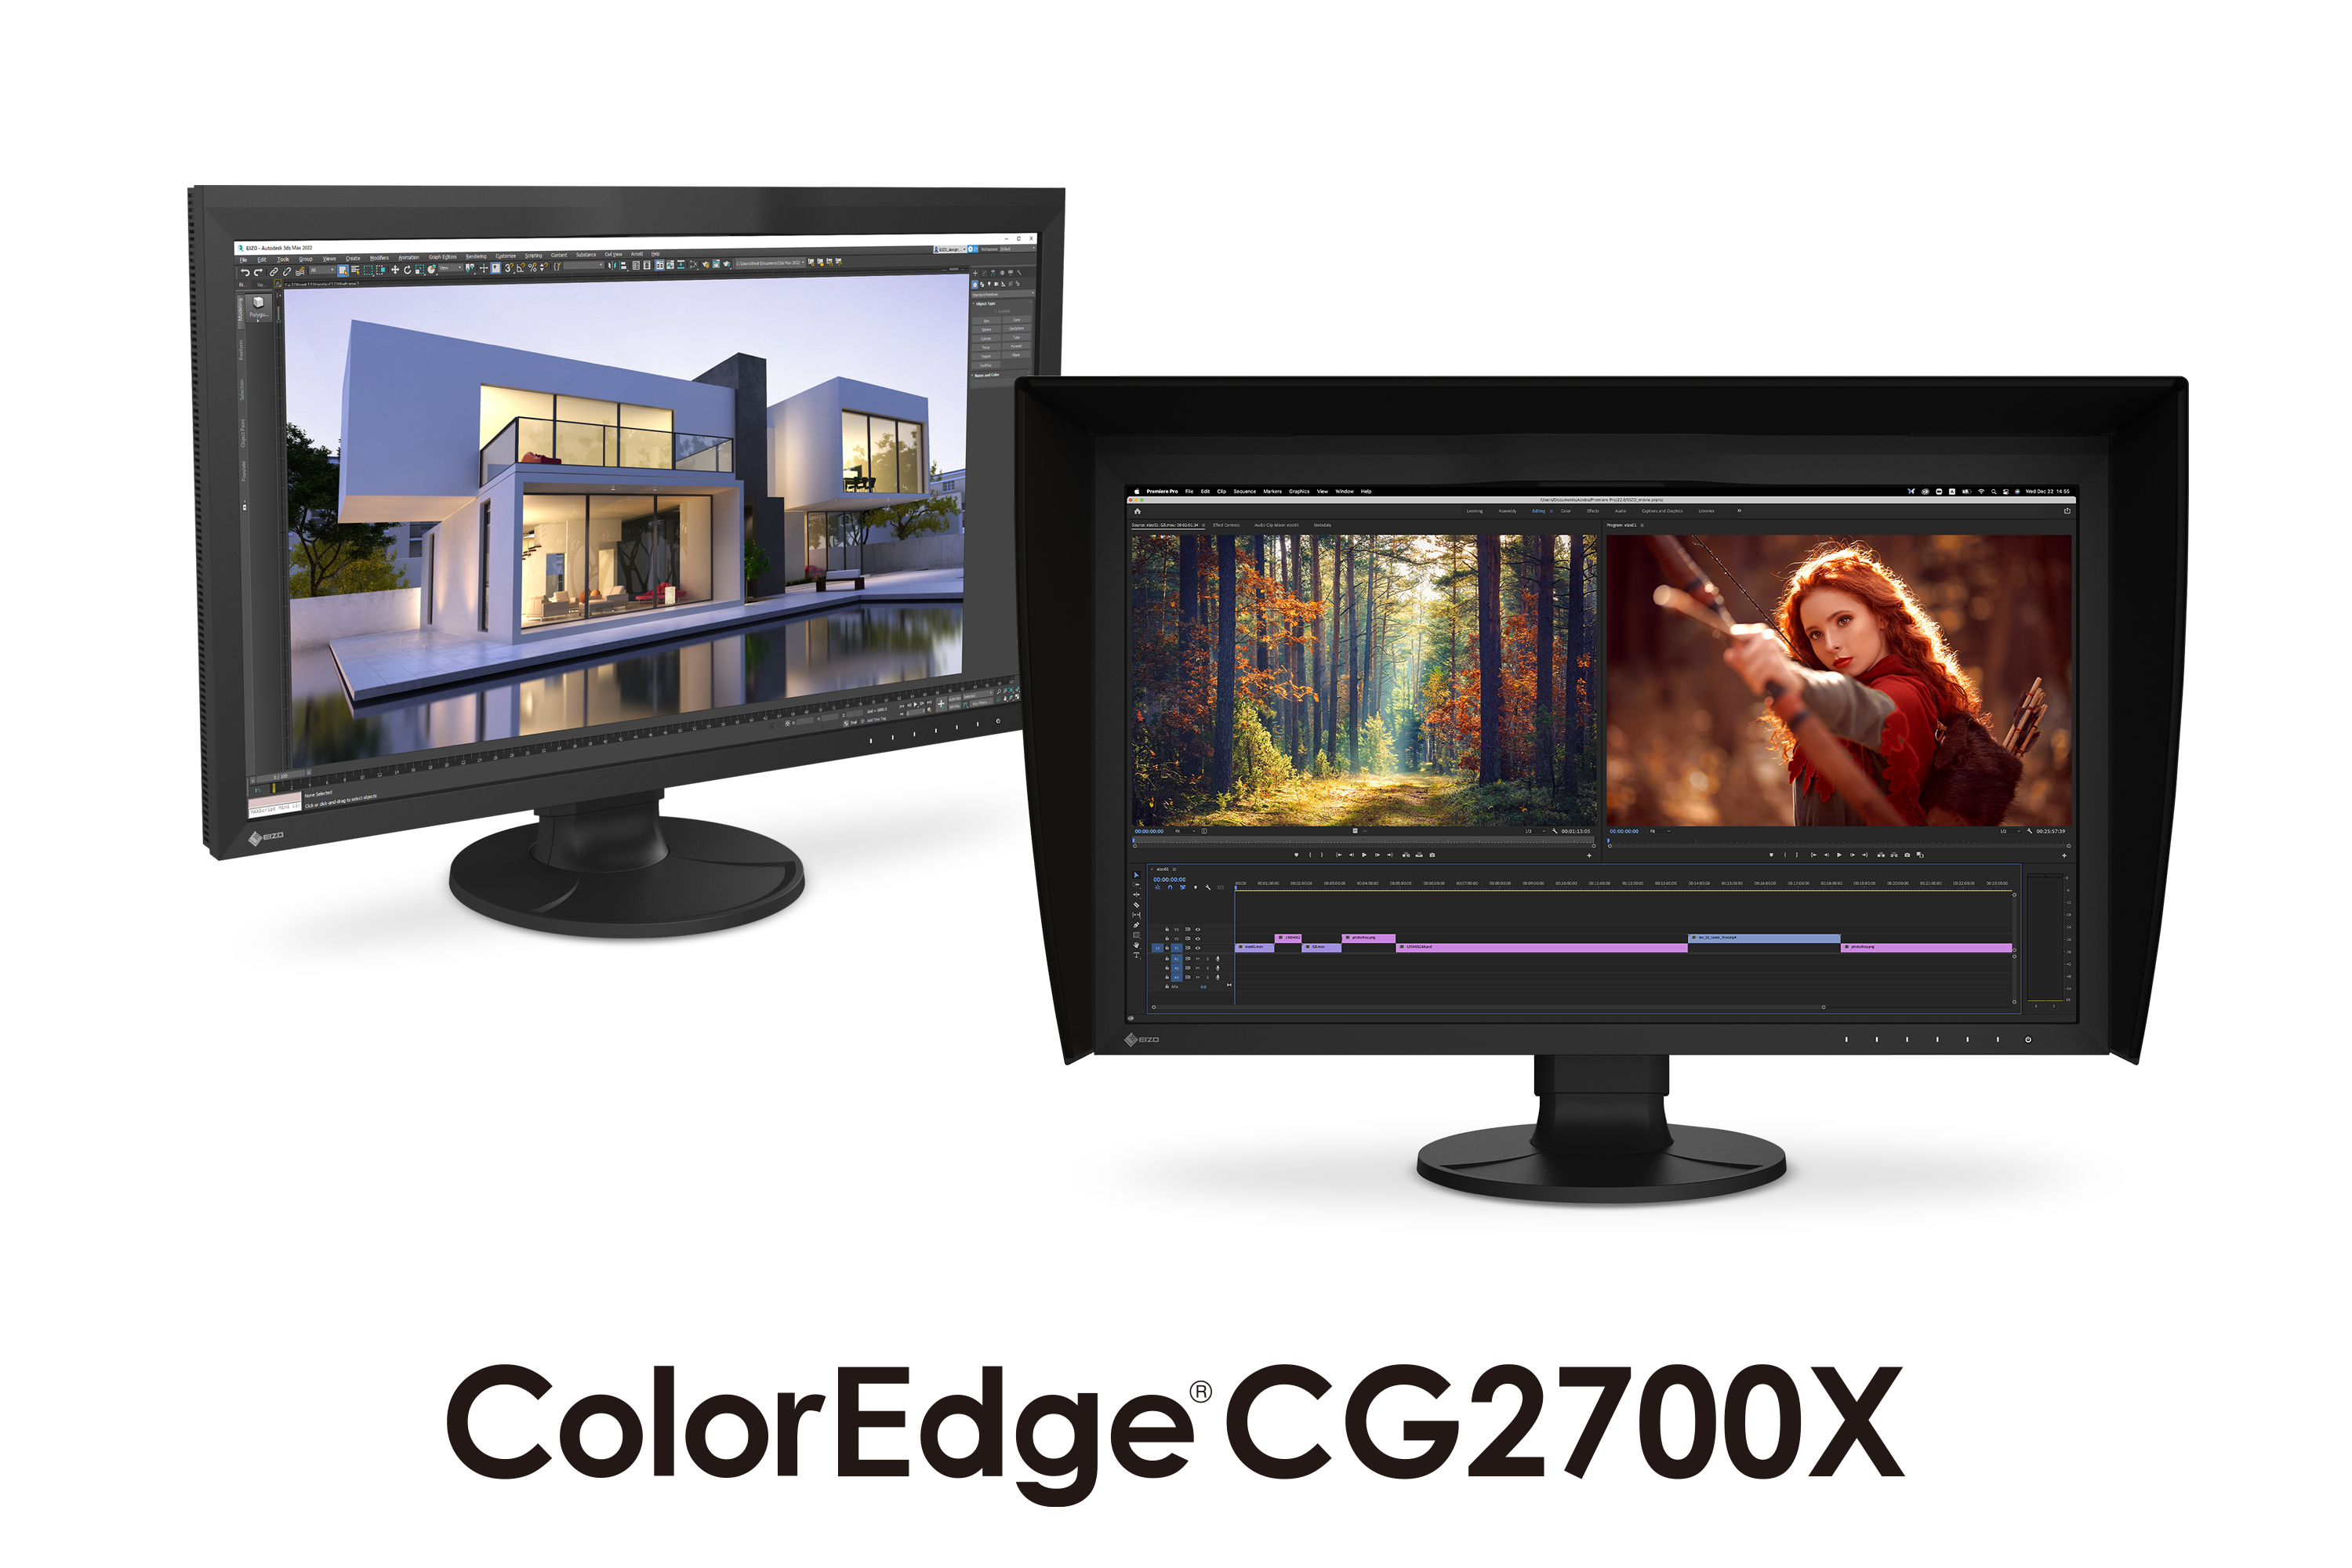 ColorEdge CG2700X